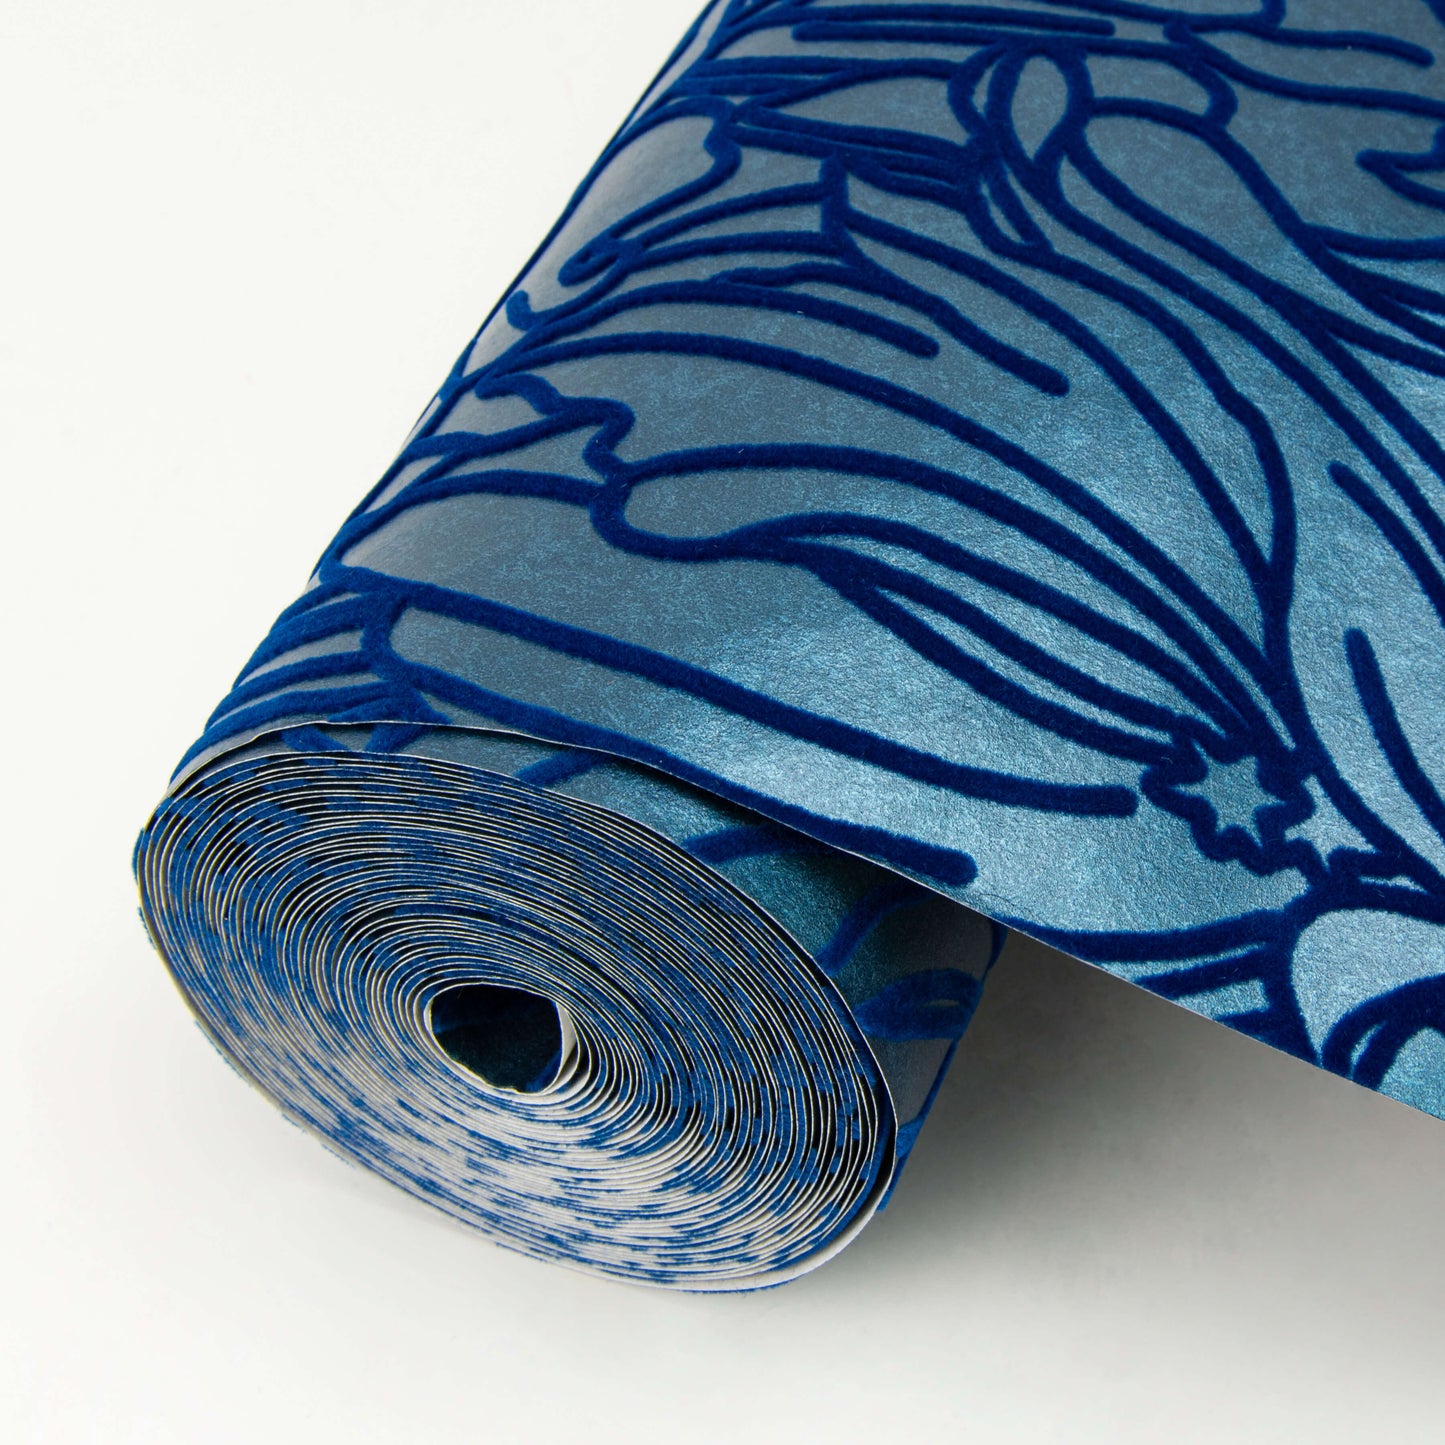 A-Street Prints Revival Selwyn Flock Wallpaper - Dark Blue